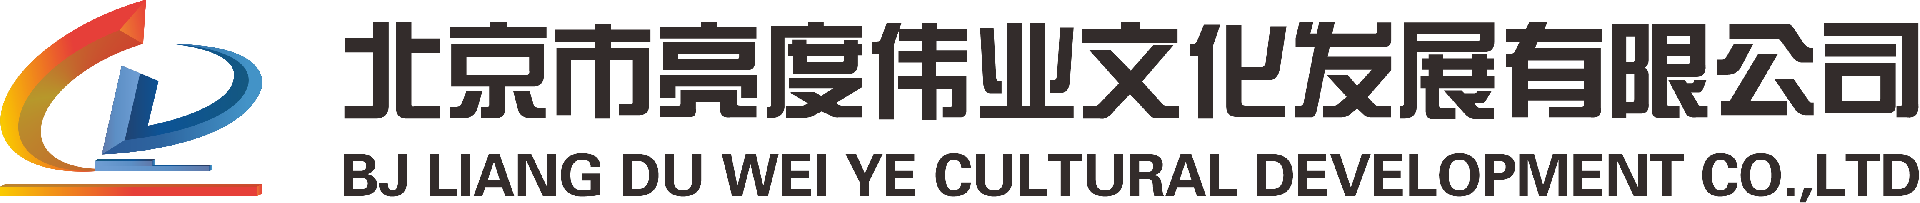 公司简介-北京市亮度伟业文化发展有限公司-北京市亮度伟业文化发展有限公司